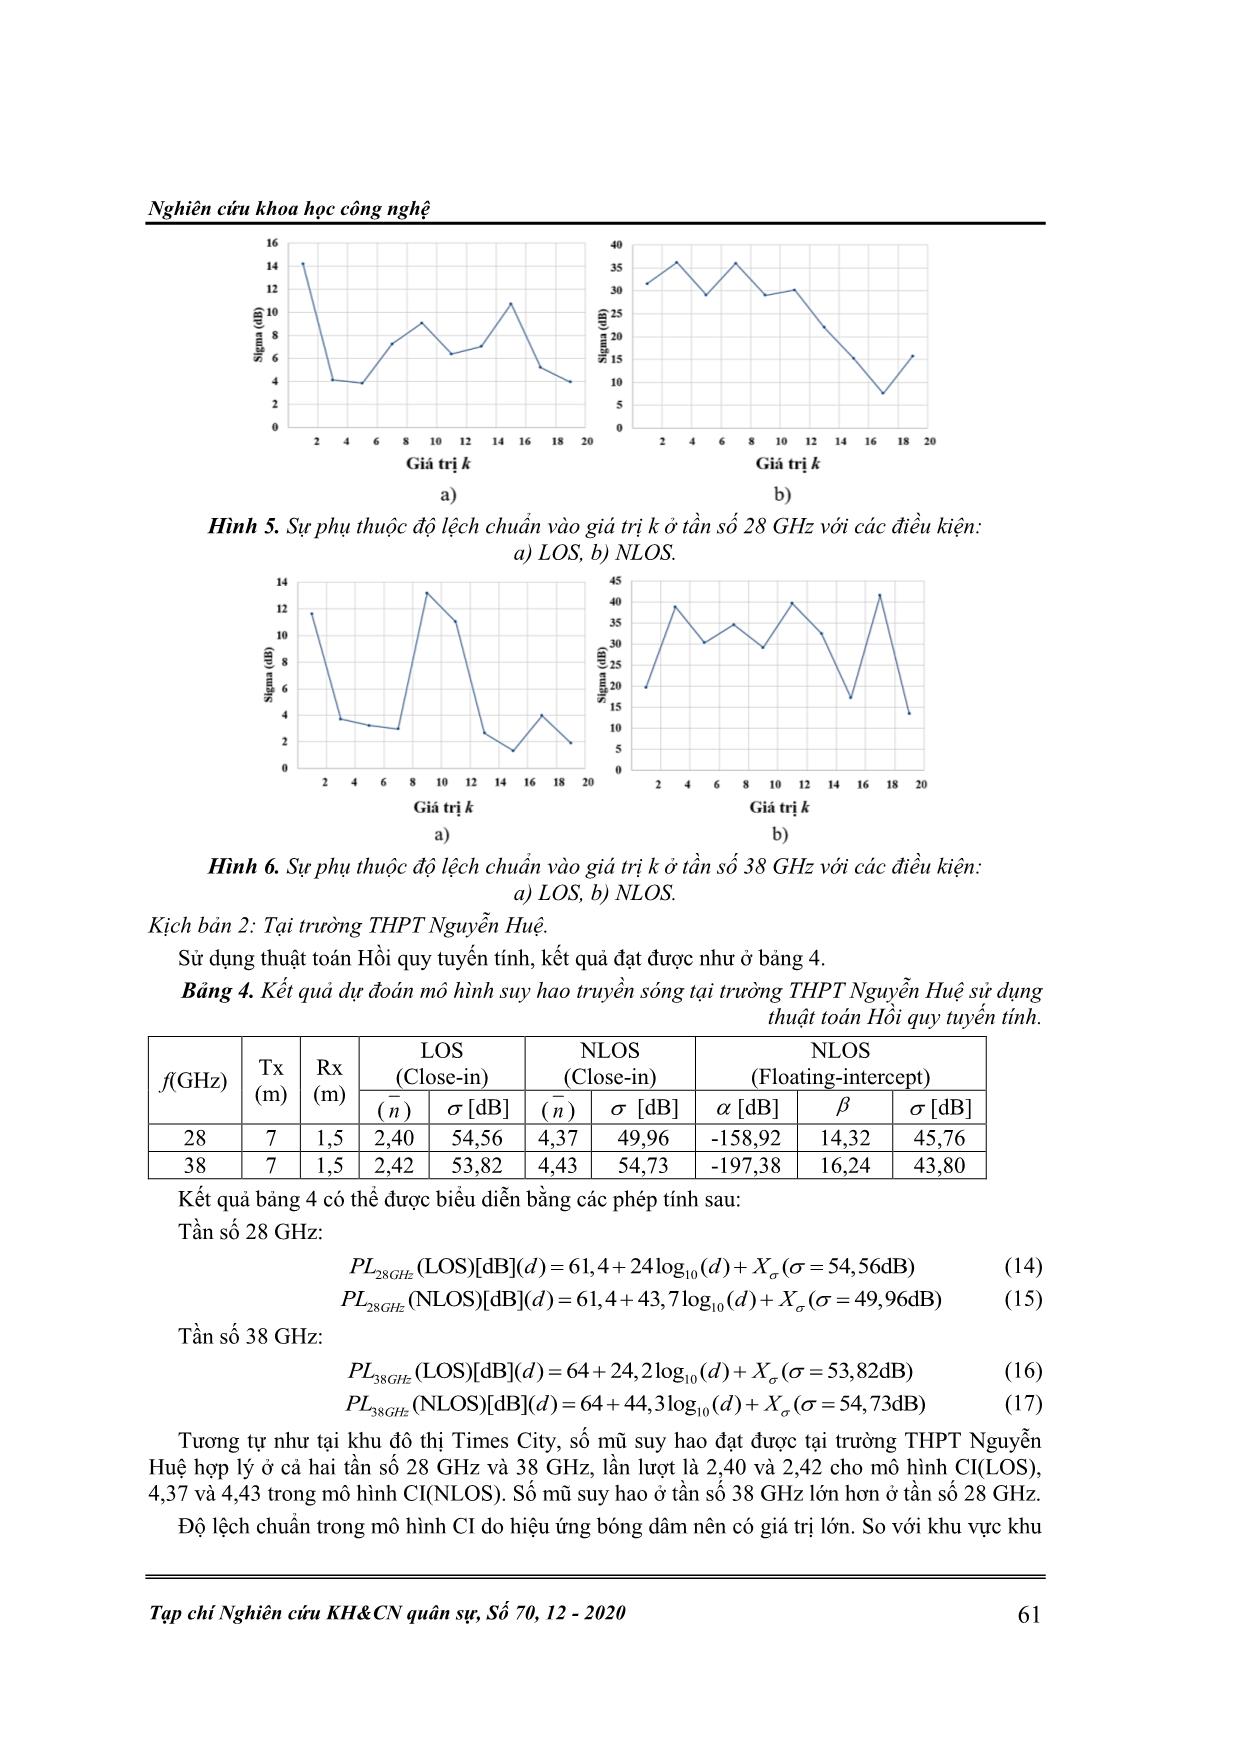 Ứng dụng thuật toán học máy trong ước lượng mô hình suy hao truyền sóng dải sóng milimet trang 8